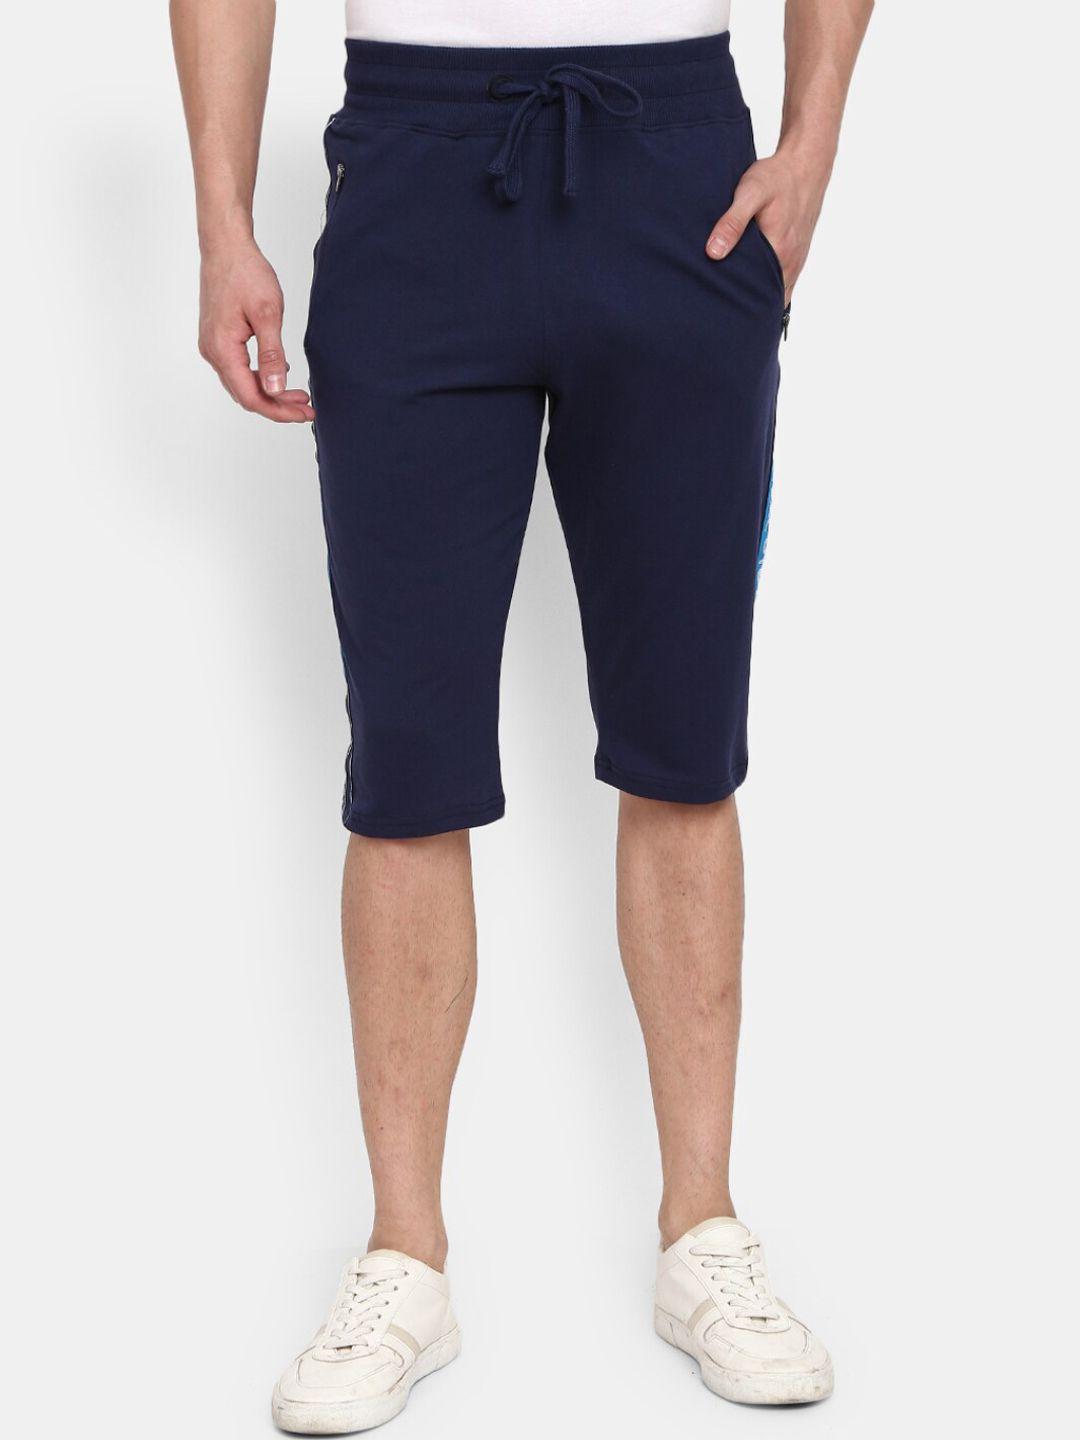 v-mart men blue shorts